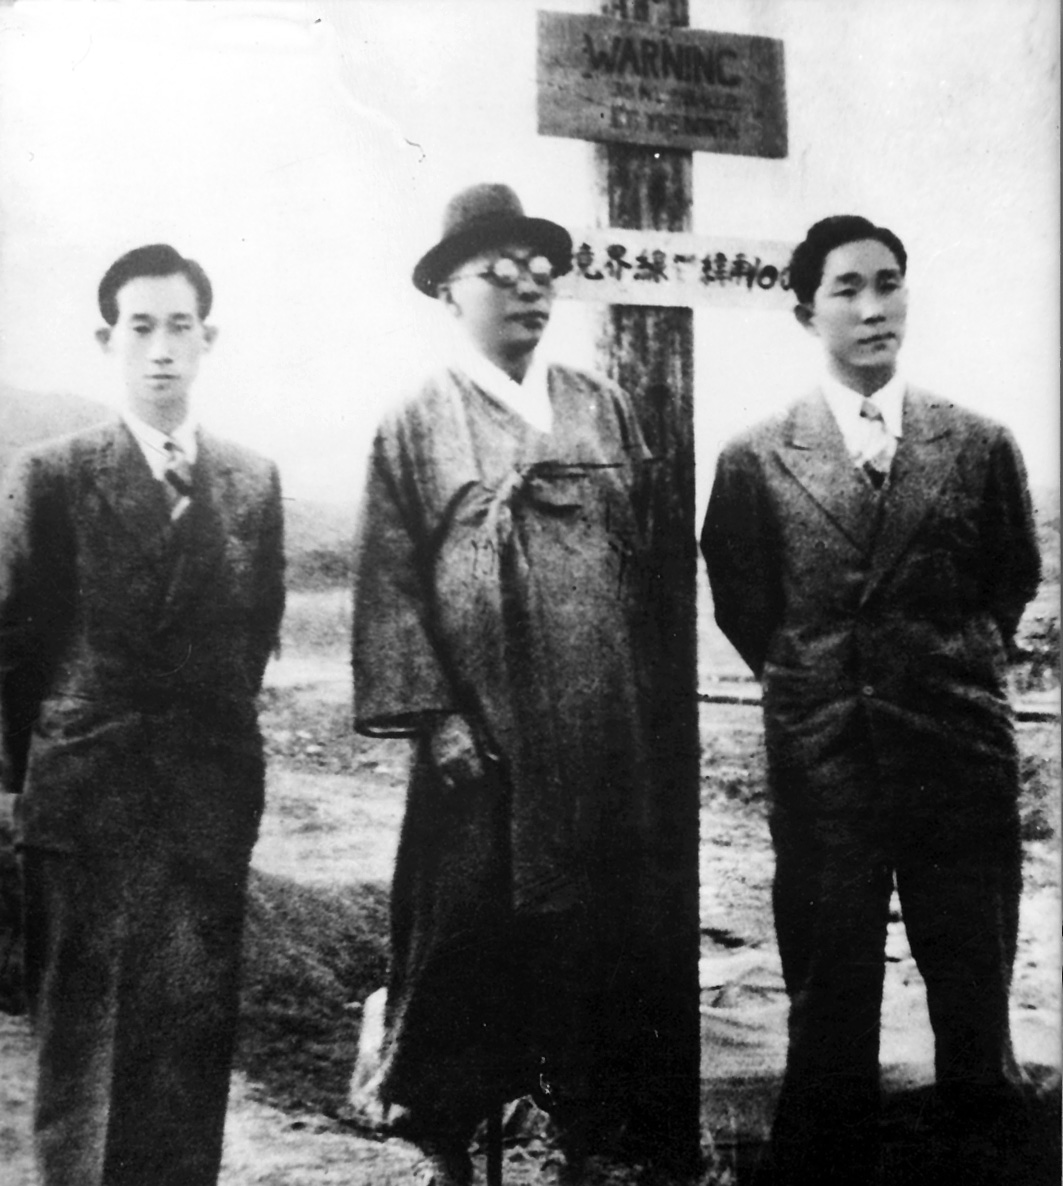  1948. 4. 19. 남북연석회의 차 평양으로 가는 길에 38선 표지 앞에선 백범(가운데, 왼쪽 선우진 비서, 오른쪽 아들 신)